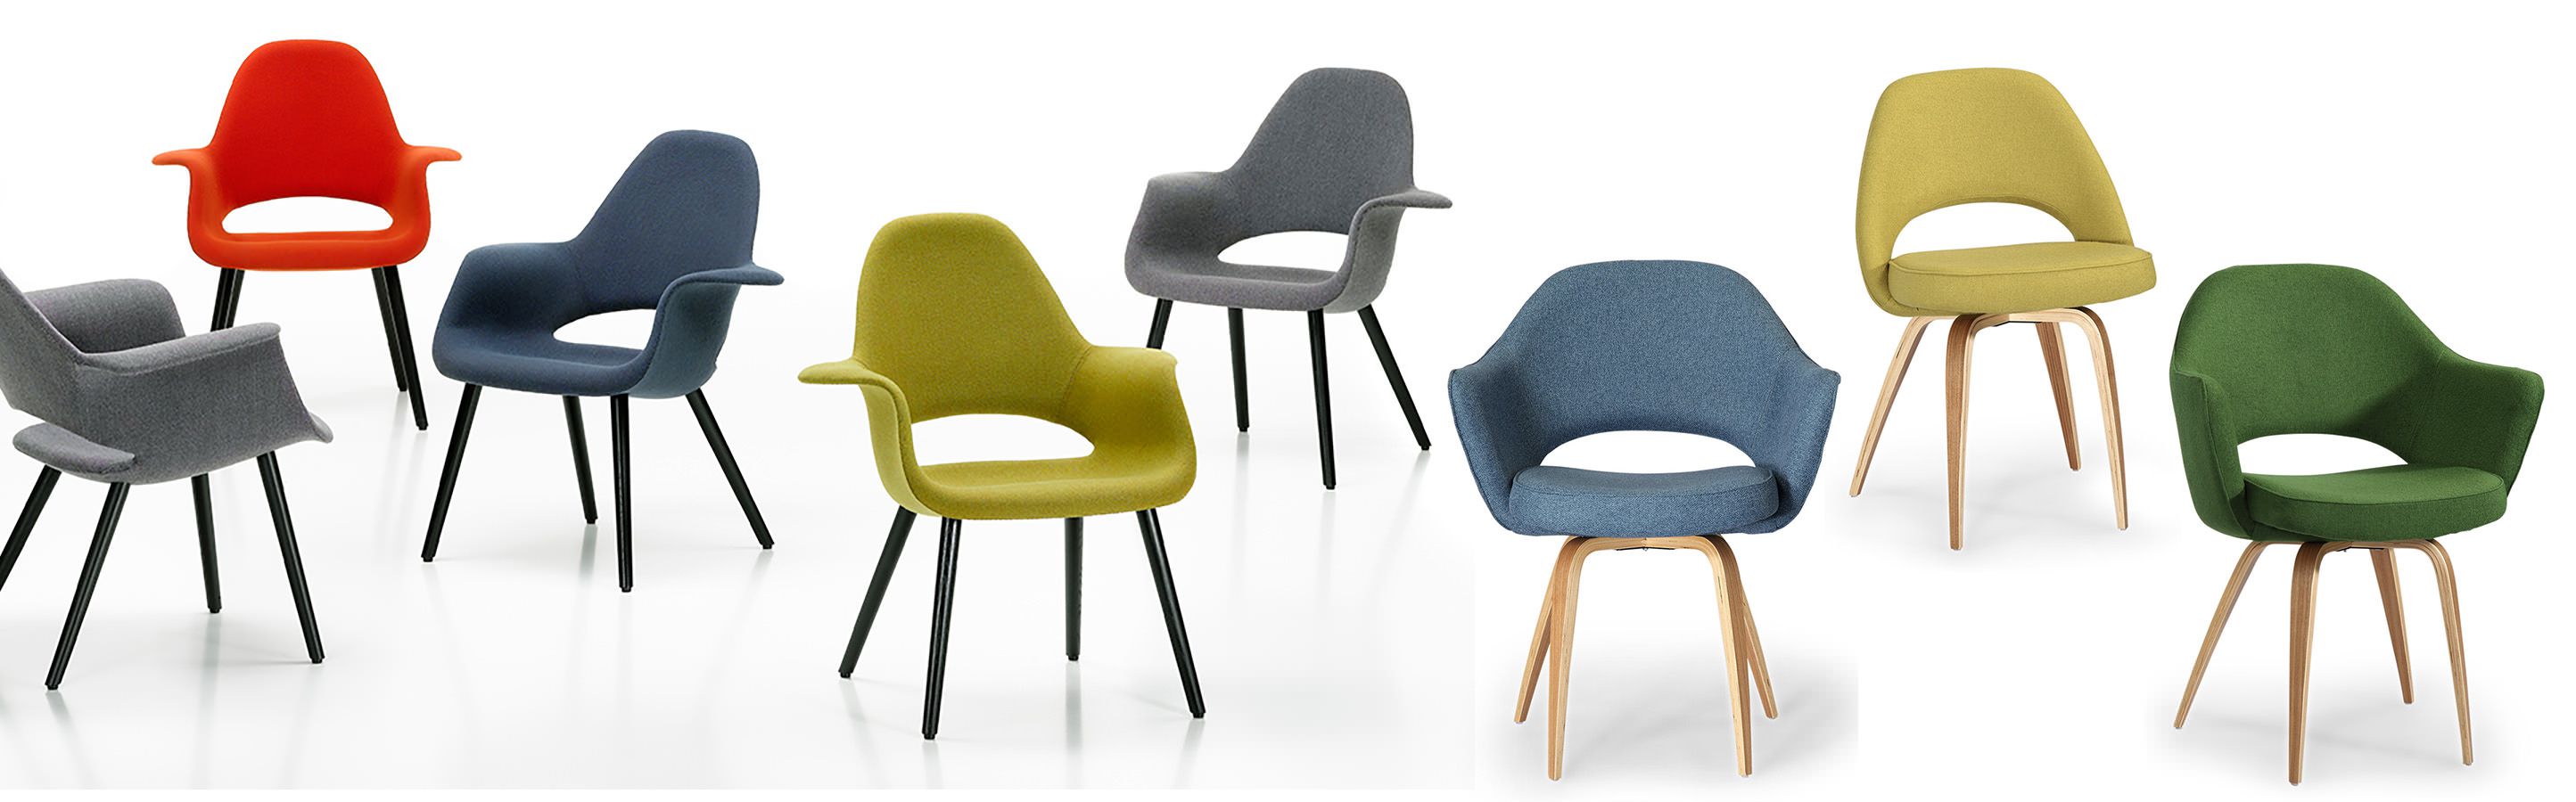 Saarinen Mid Century Modern Chairs